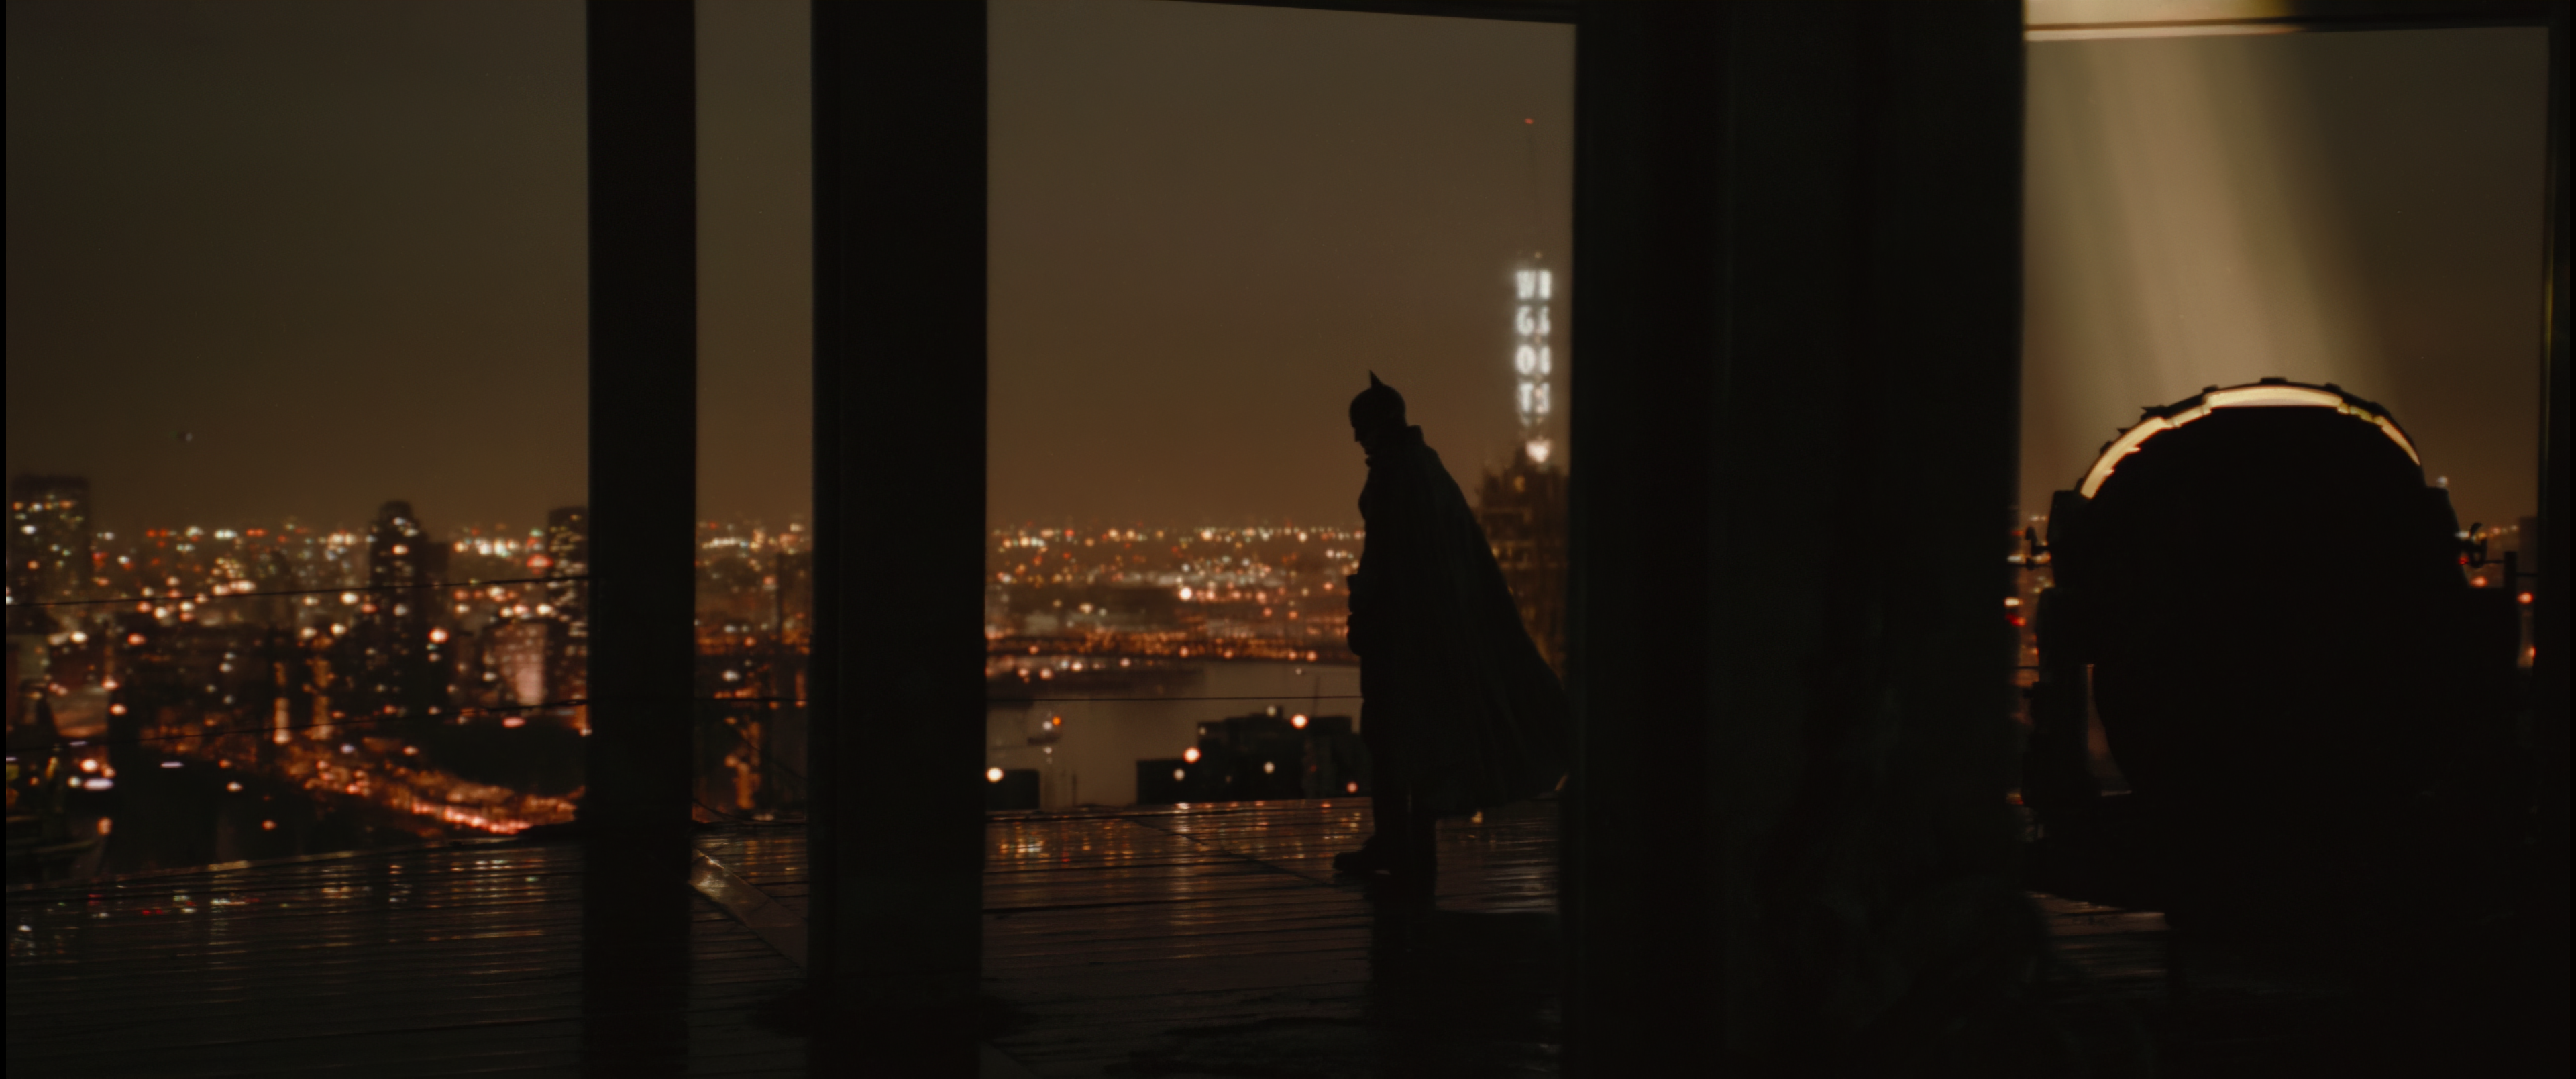 Cena do filme Batman. O Batman (Robert Pattinson) está no topo de um edifício em construção, virado para a esquerda, observando a cidade de Gotham à noite. Sua silhueta deixa evidente orelhas pontudas em seu capacete e uma capa esvoaçante para a direita. Atrás dele, à direita da tela e separado por vigas expostas, um holofote aceso aponta para o céu. Outras duas vigas menores, à esquerda, cortam a tela. O chão do edifício parece reflexivo e úmido. A cidade de Gotham é cortada por um rio e, ao longe, uma torre de rádio informa sua estação com um letreiro vertical luminoso.